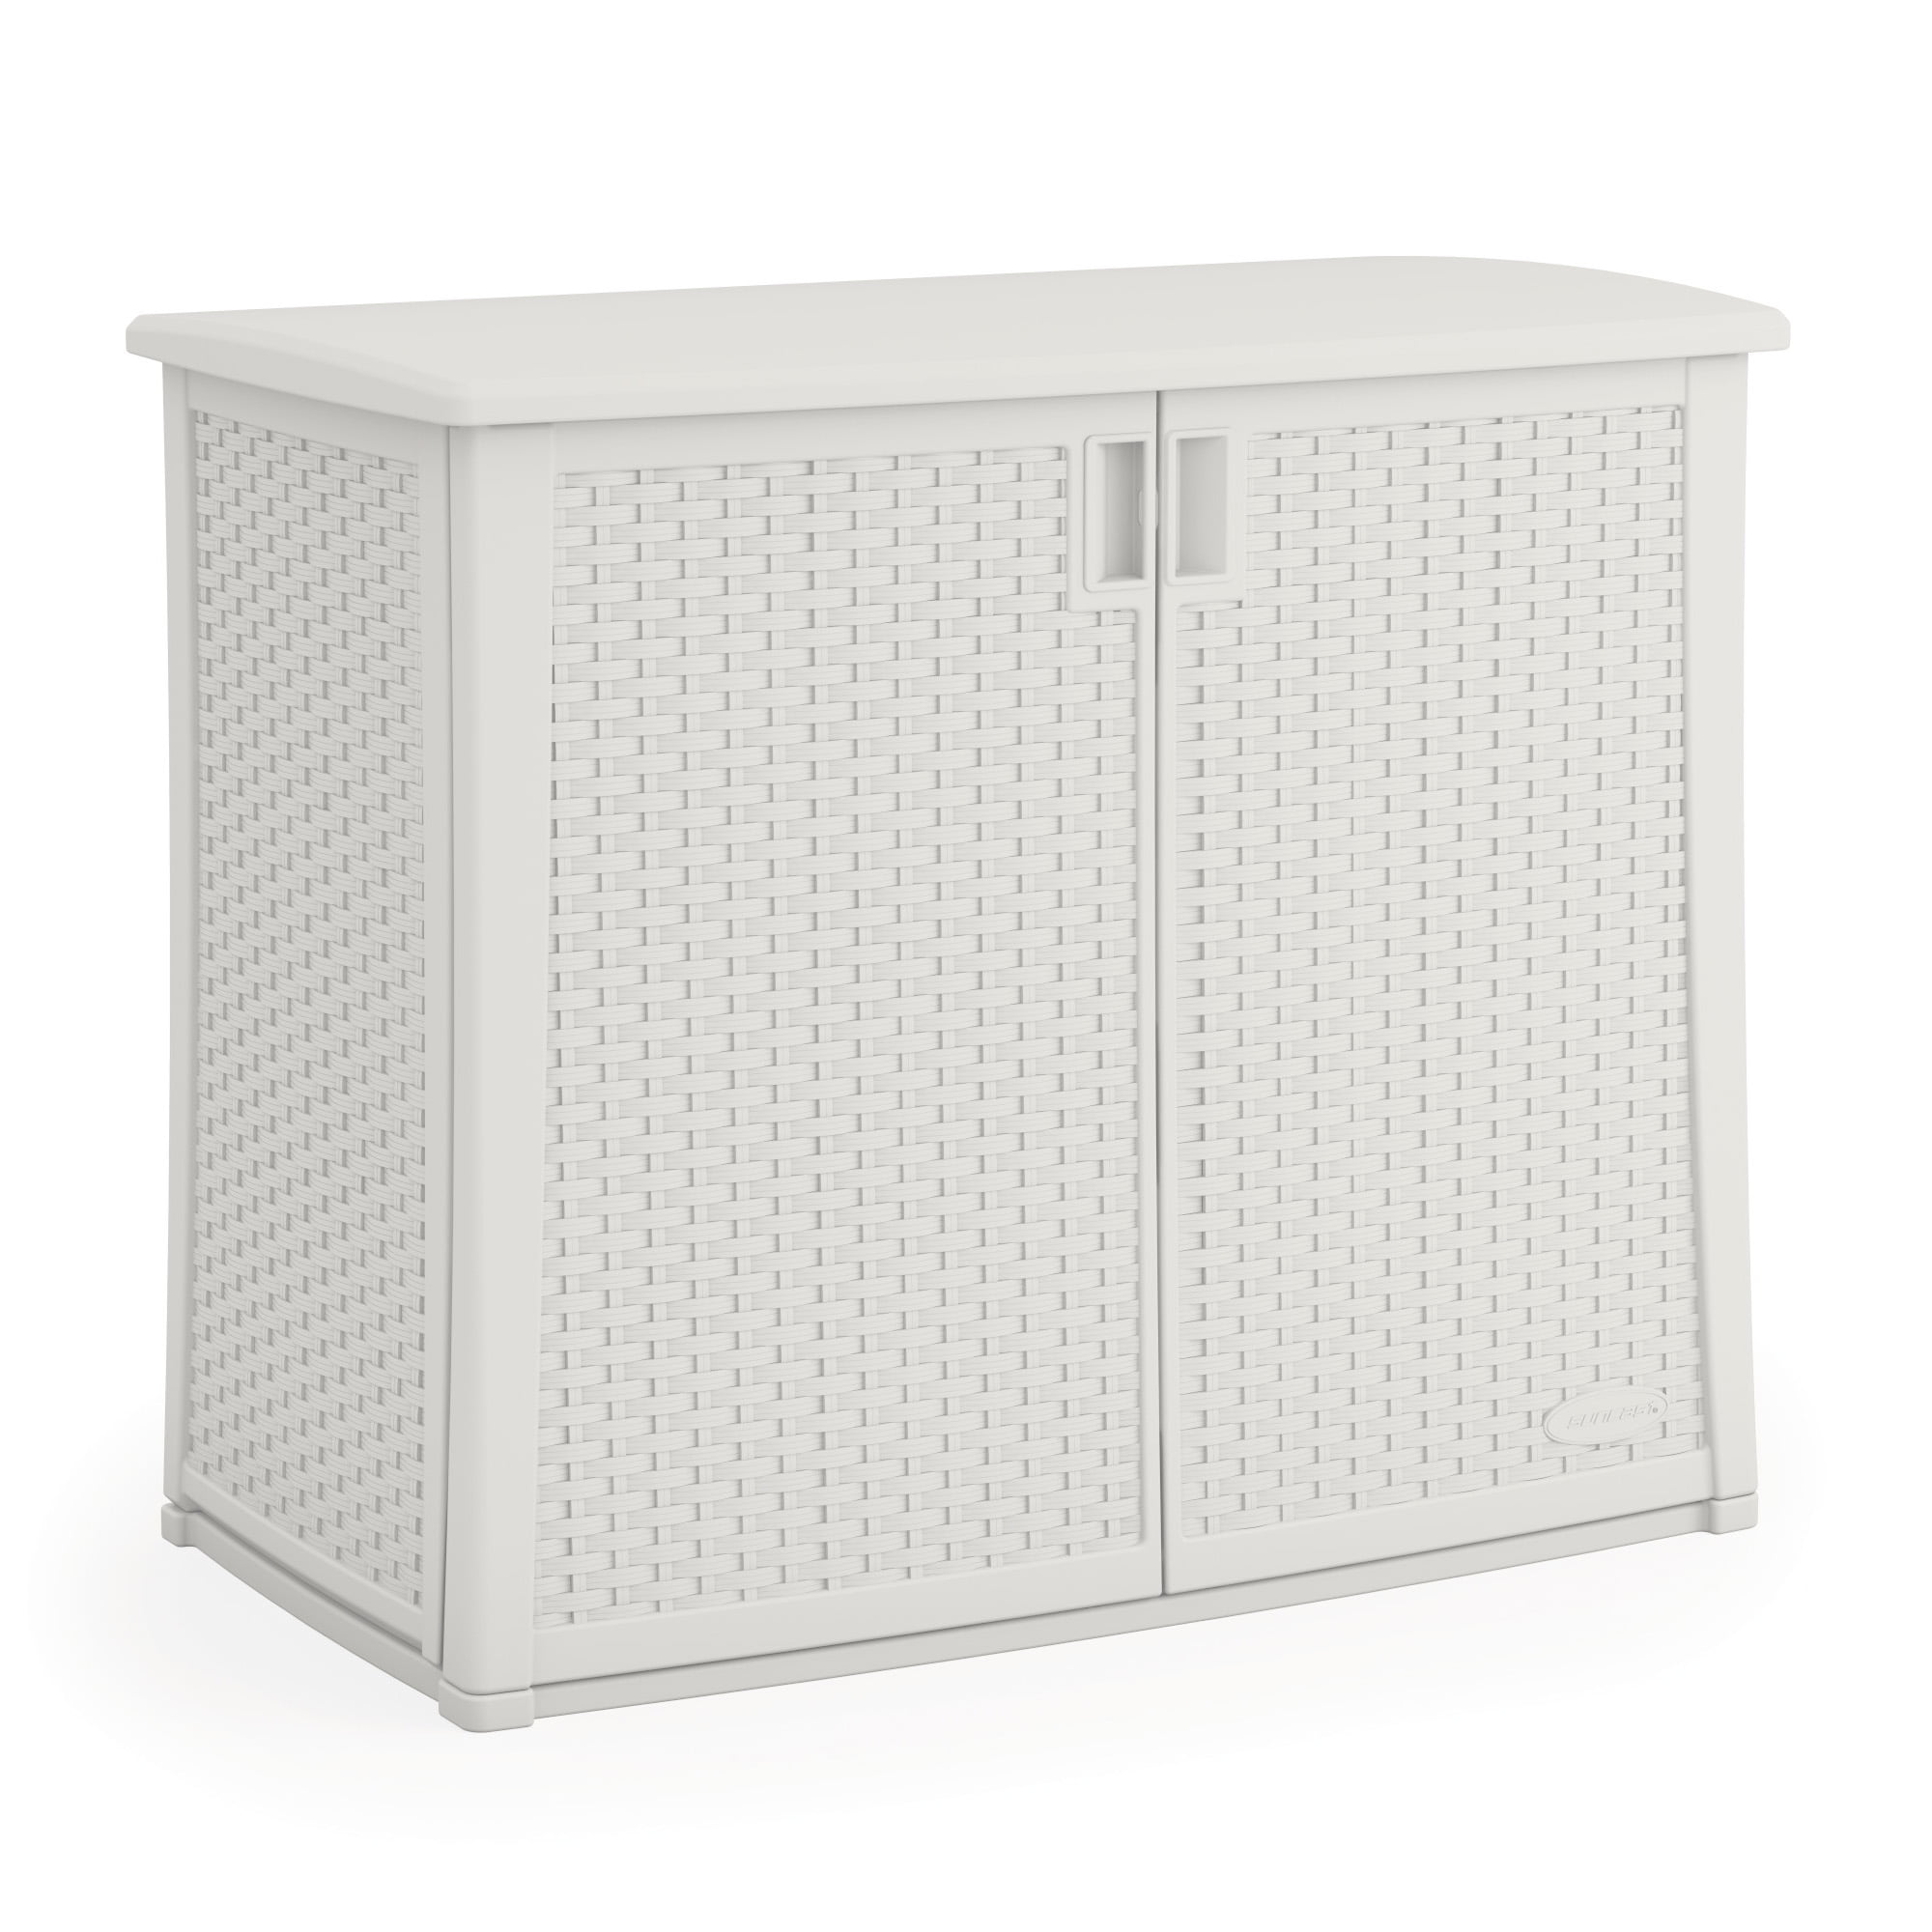 Suncast 97 Gallon Outdoor Resin Wicker, Outdoor Storage Shelf With Doors